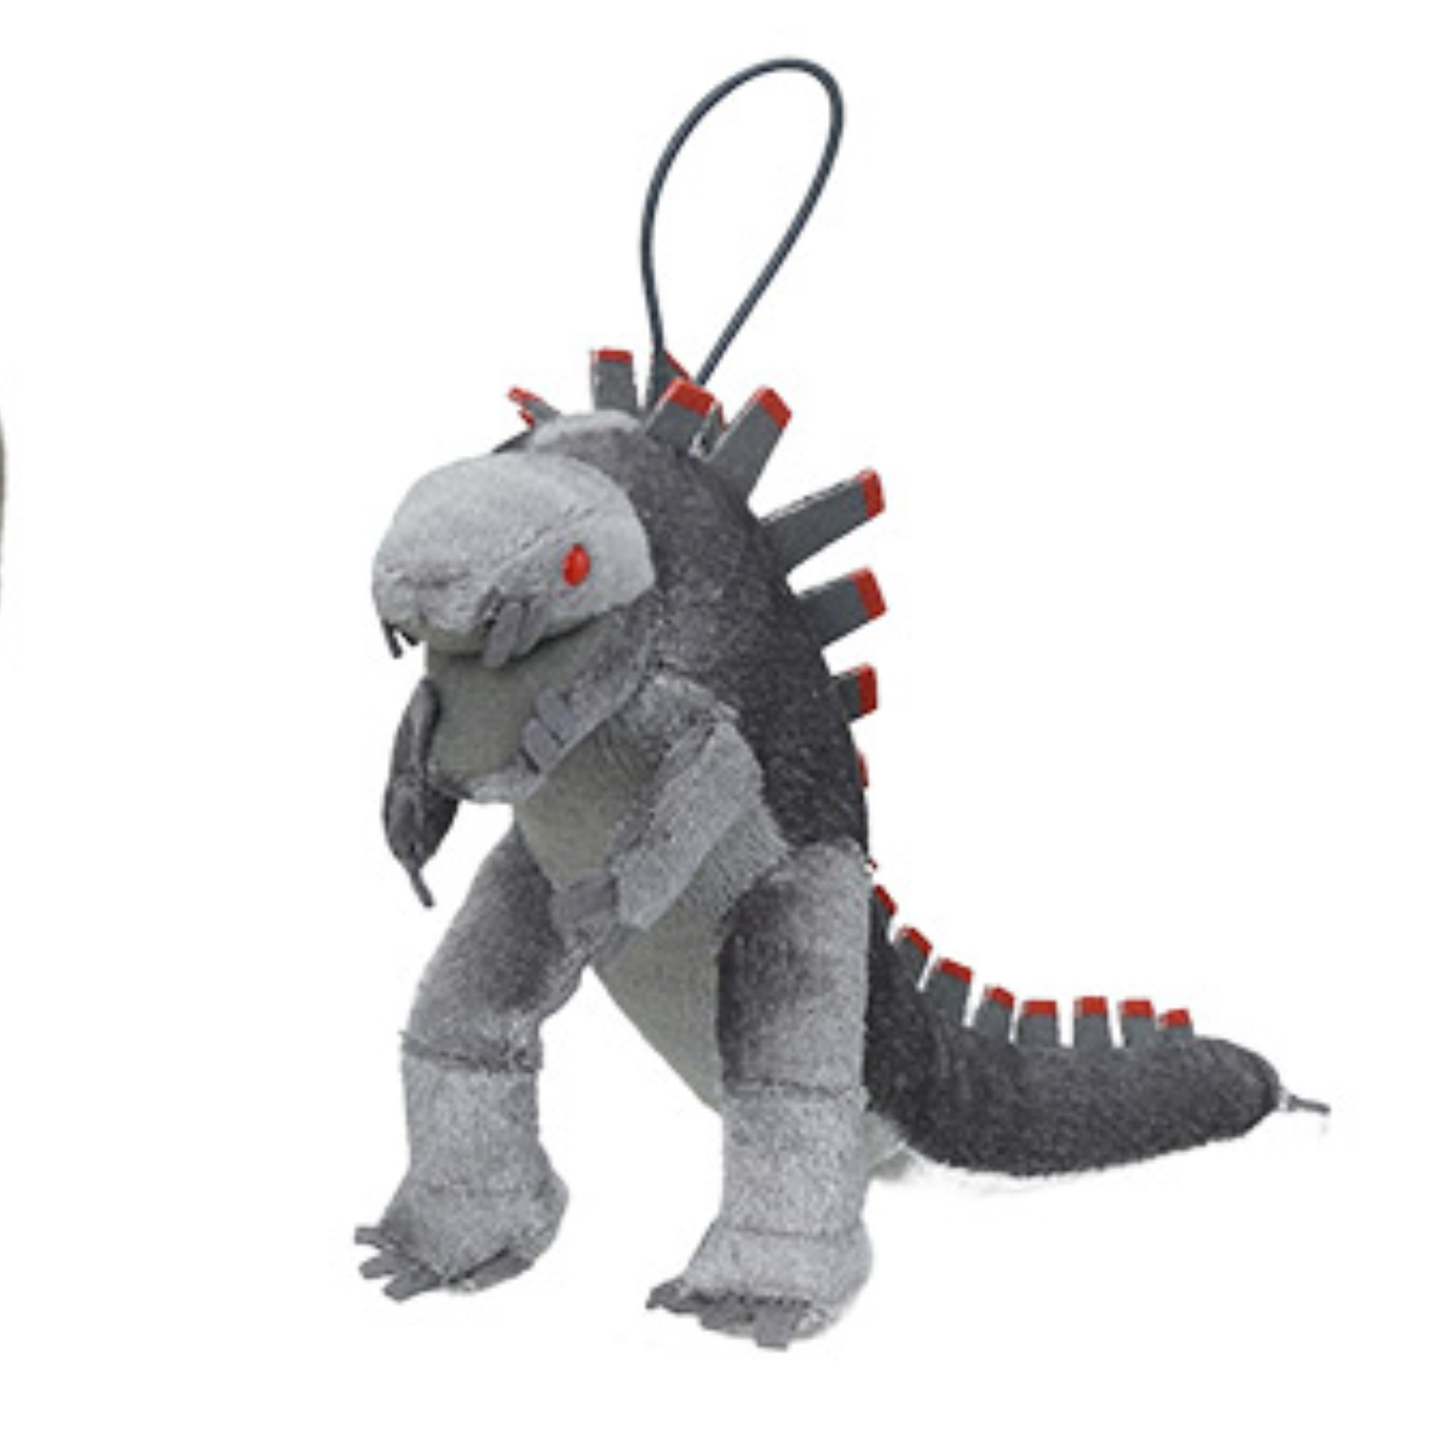 Godzilla Vs Kong - Mechagodzilla 14cm Plush